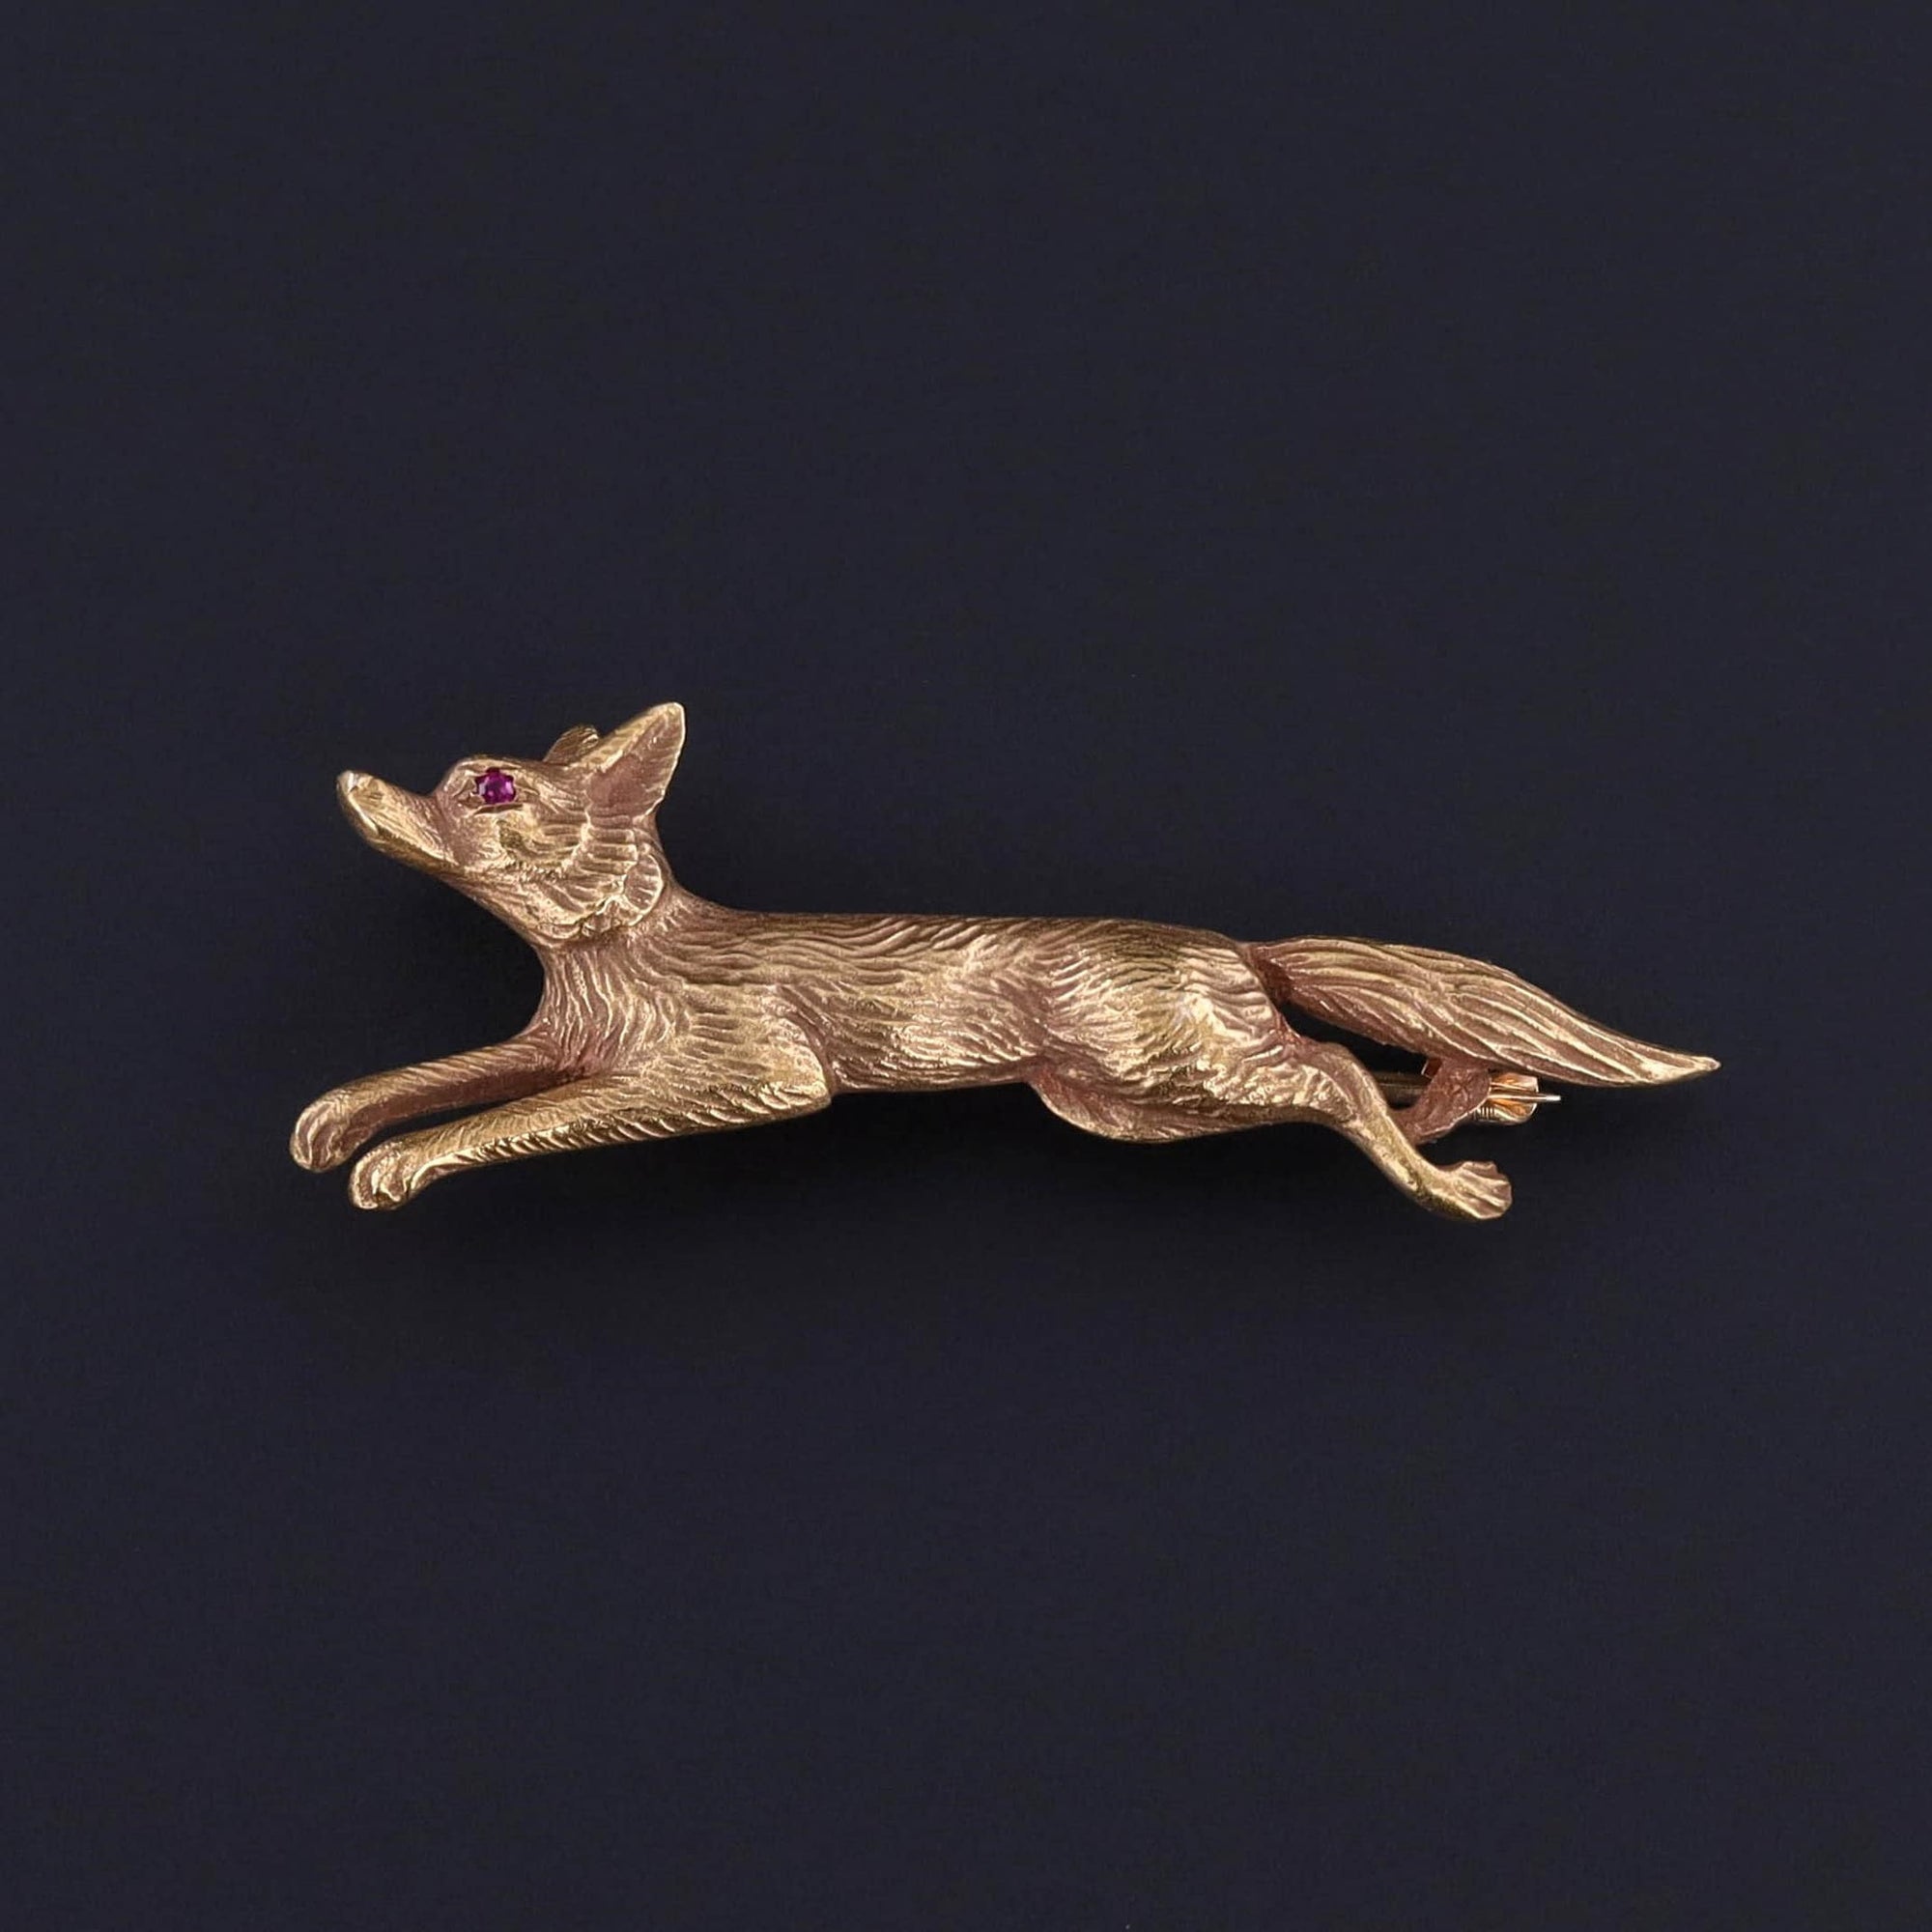 Antique Fox Brooch of 14k Gold